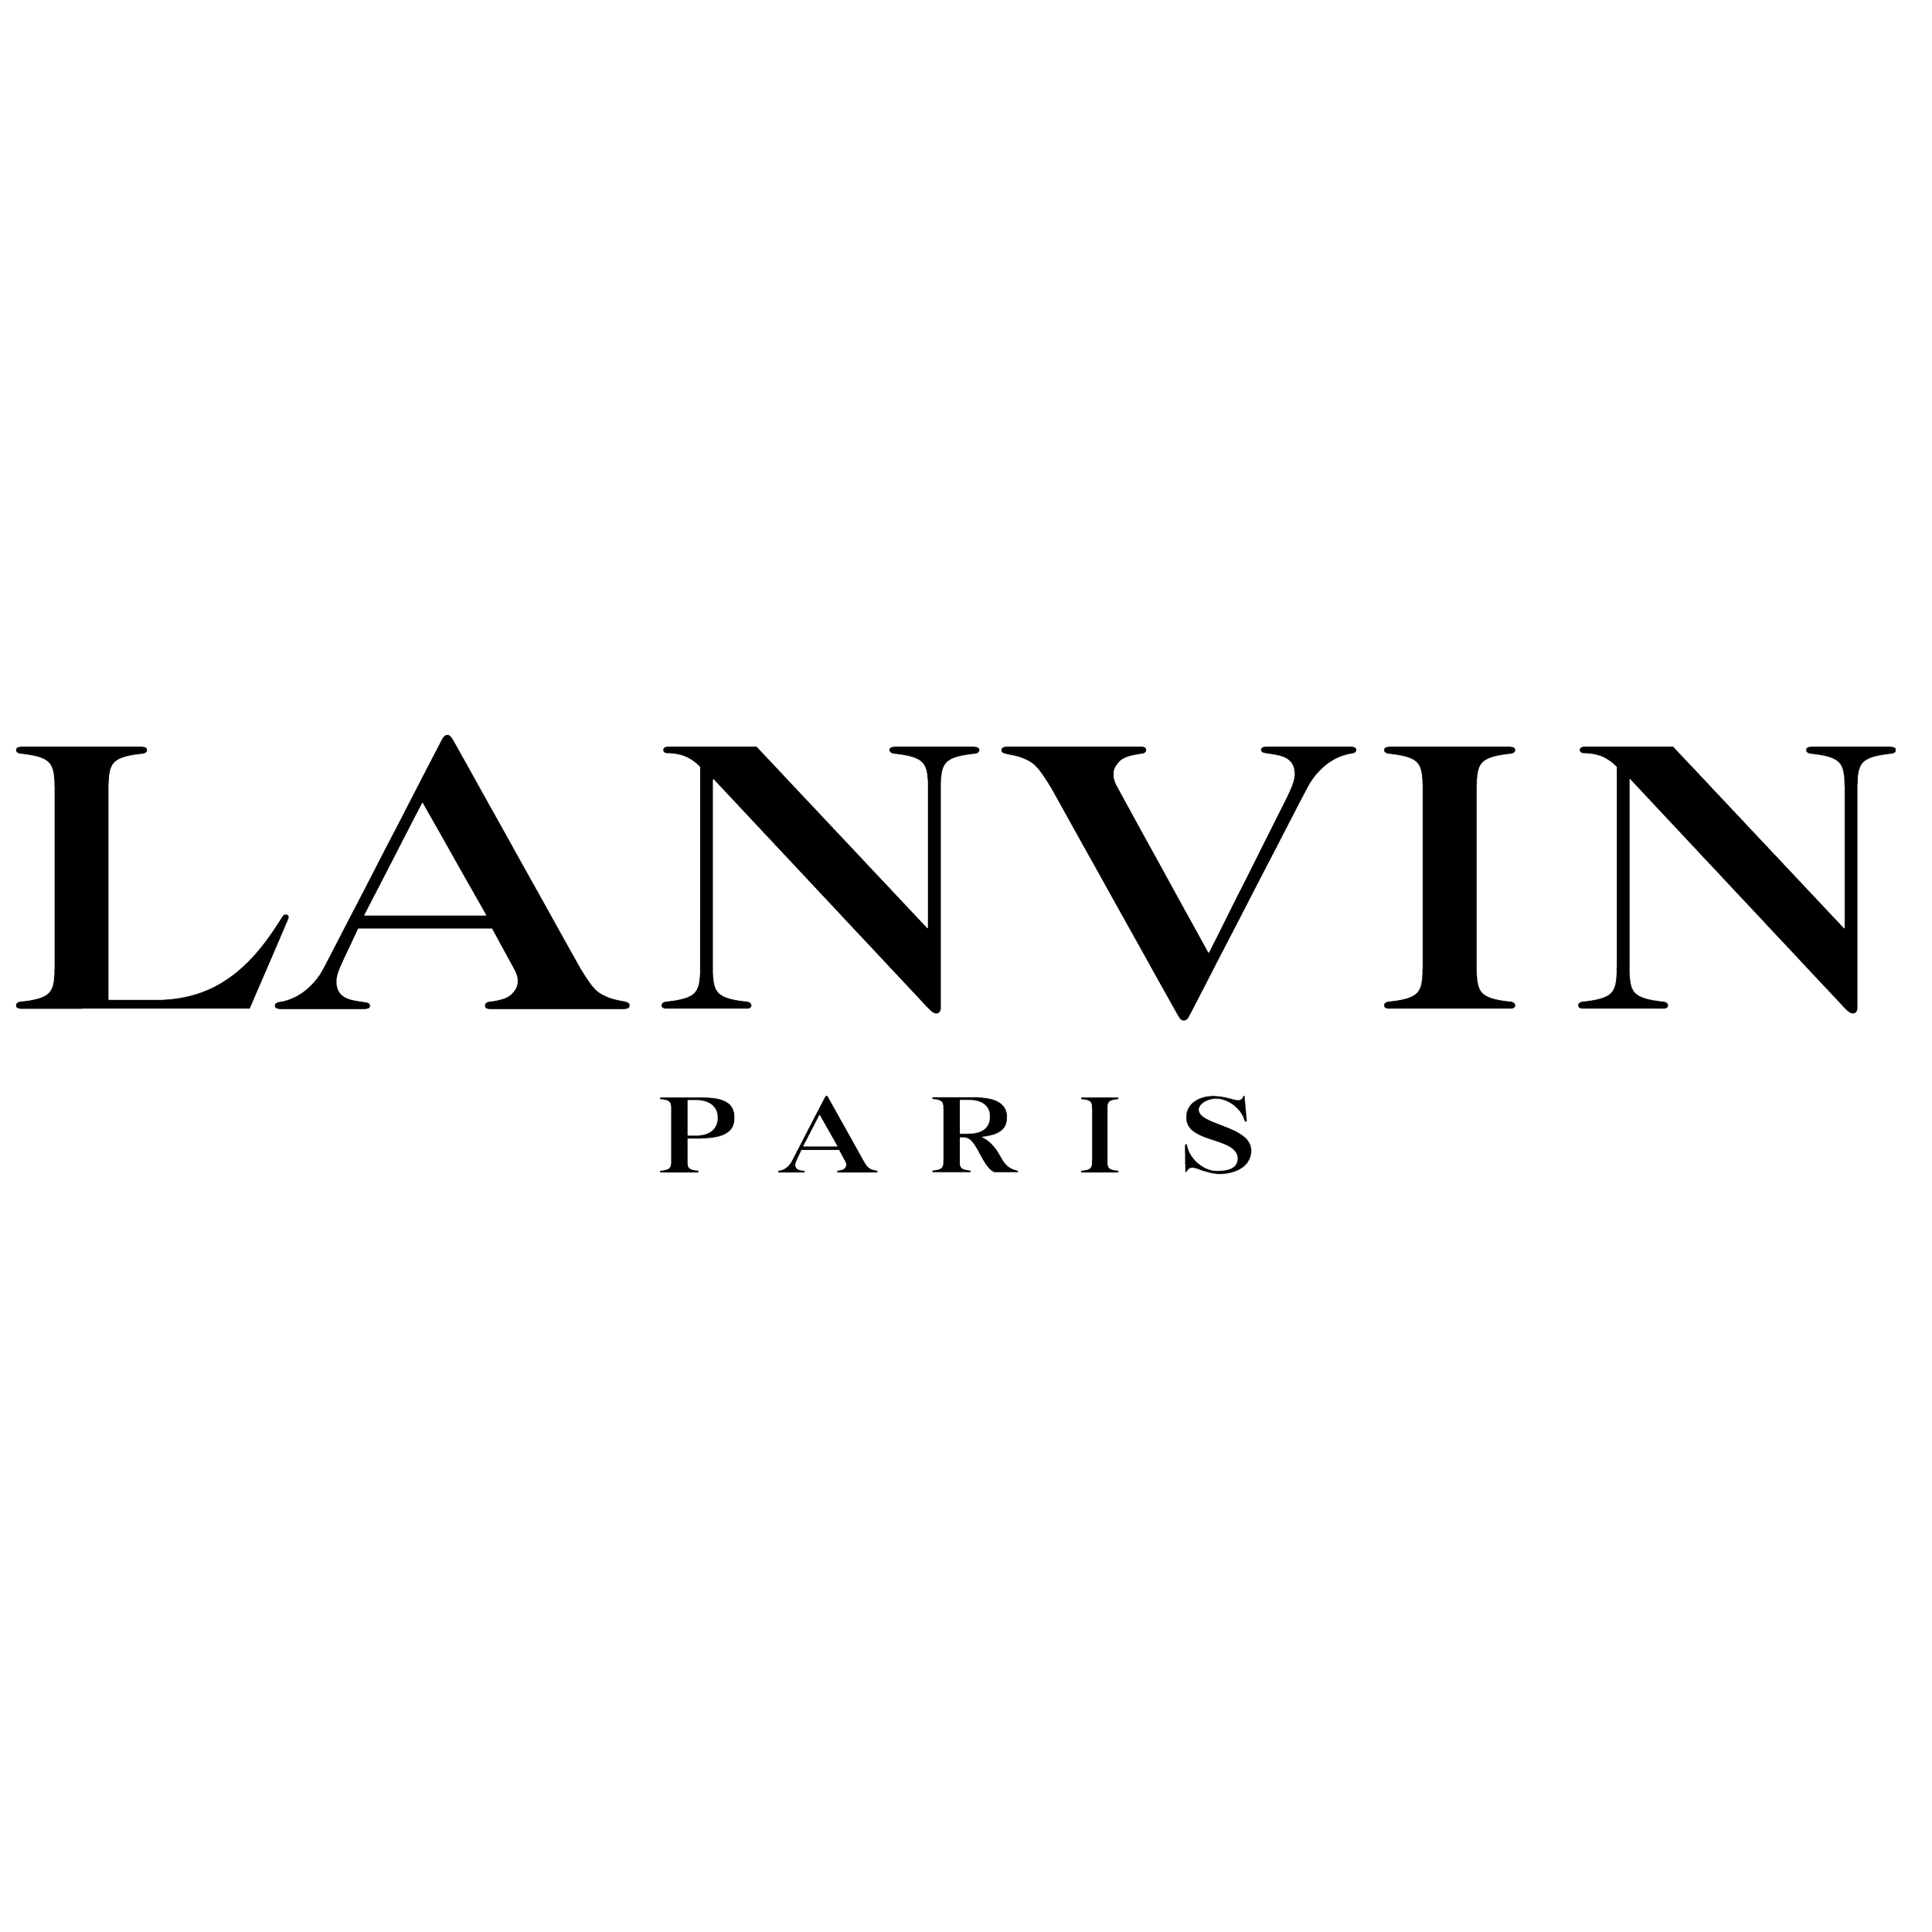 051_Lanvin_logo_logotype copy copy.png